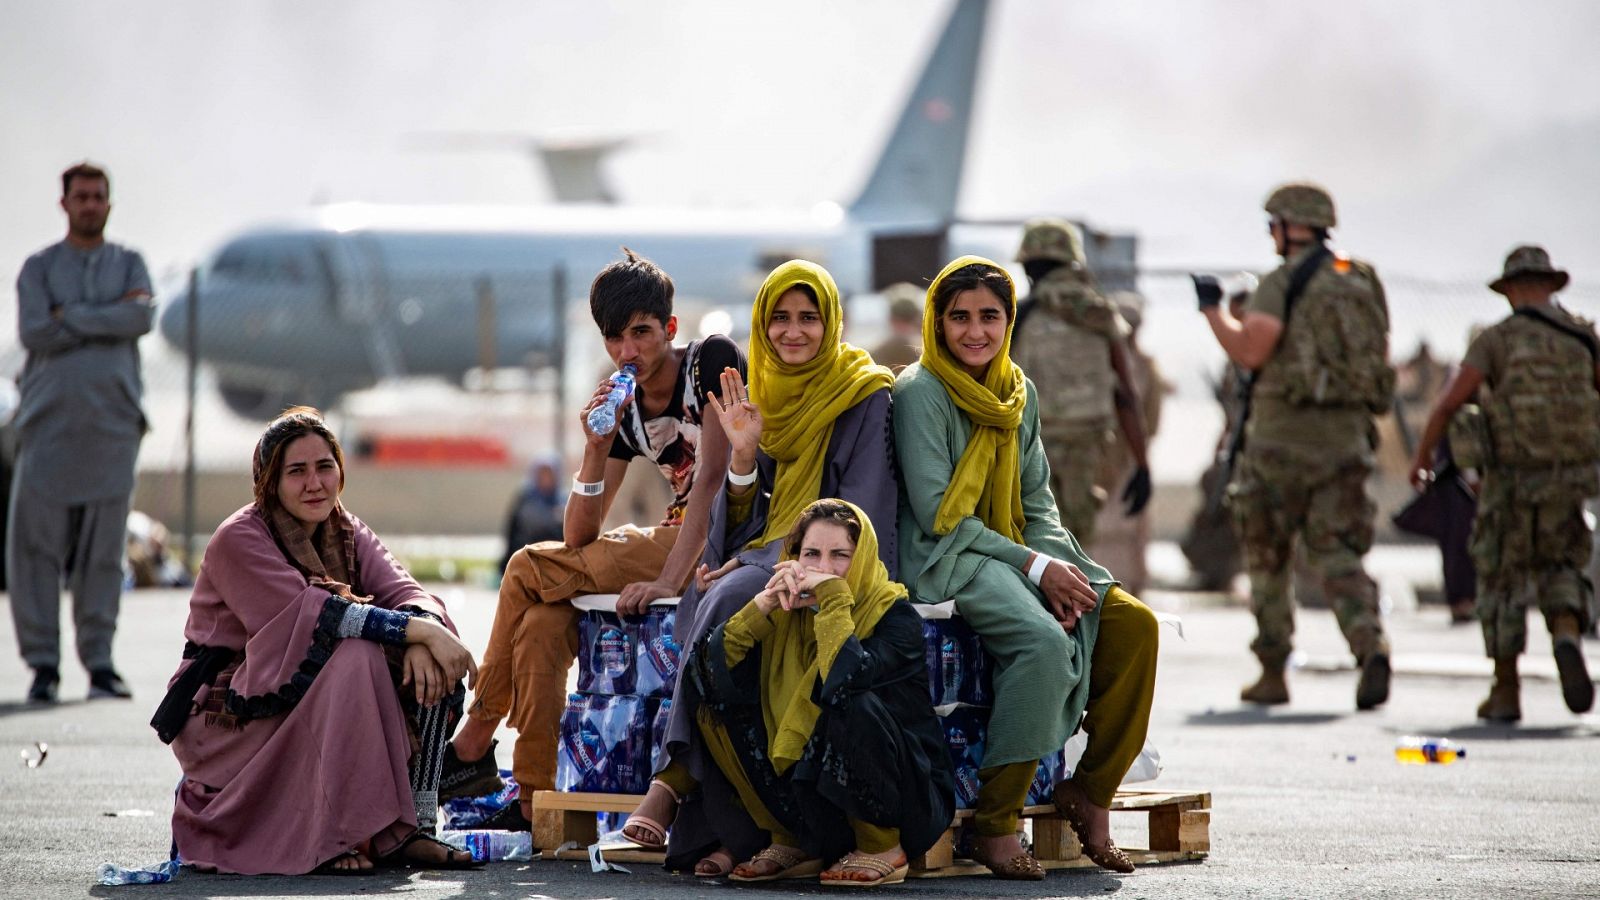 EE.UU. pide a sus ciudadanos que no vayan al aeropuerto de Kabul por seguridad